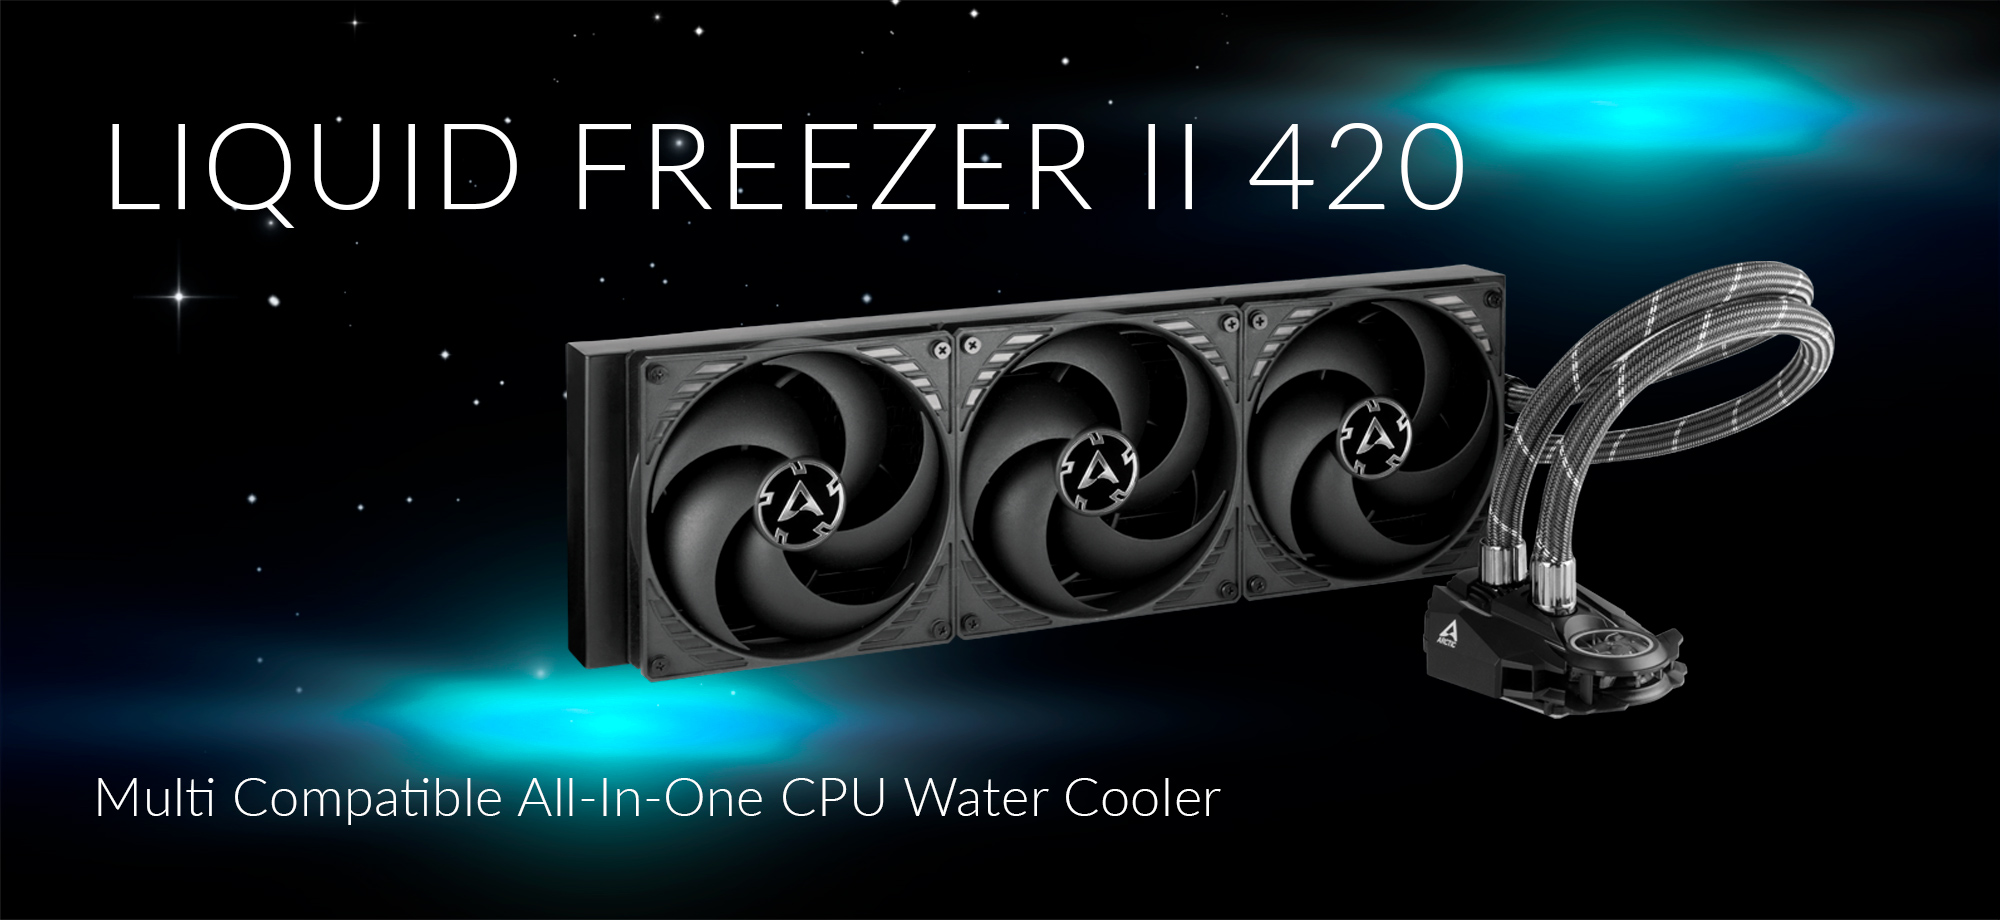 PR, Liquid Freezer II 420 Expands Water Cooling Series